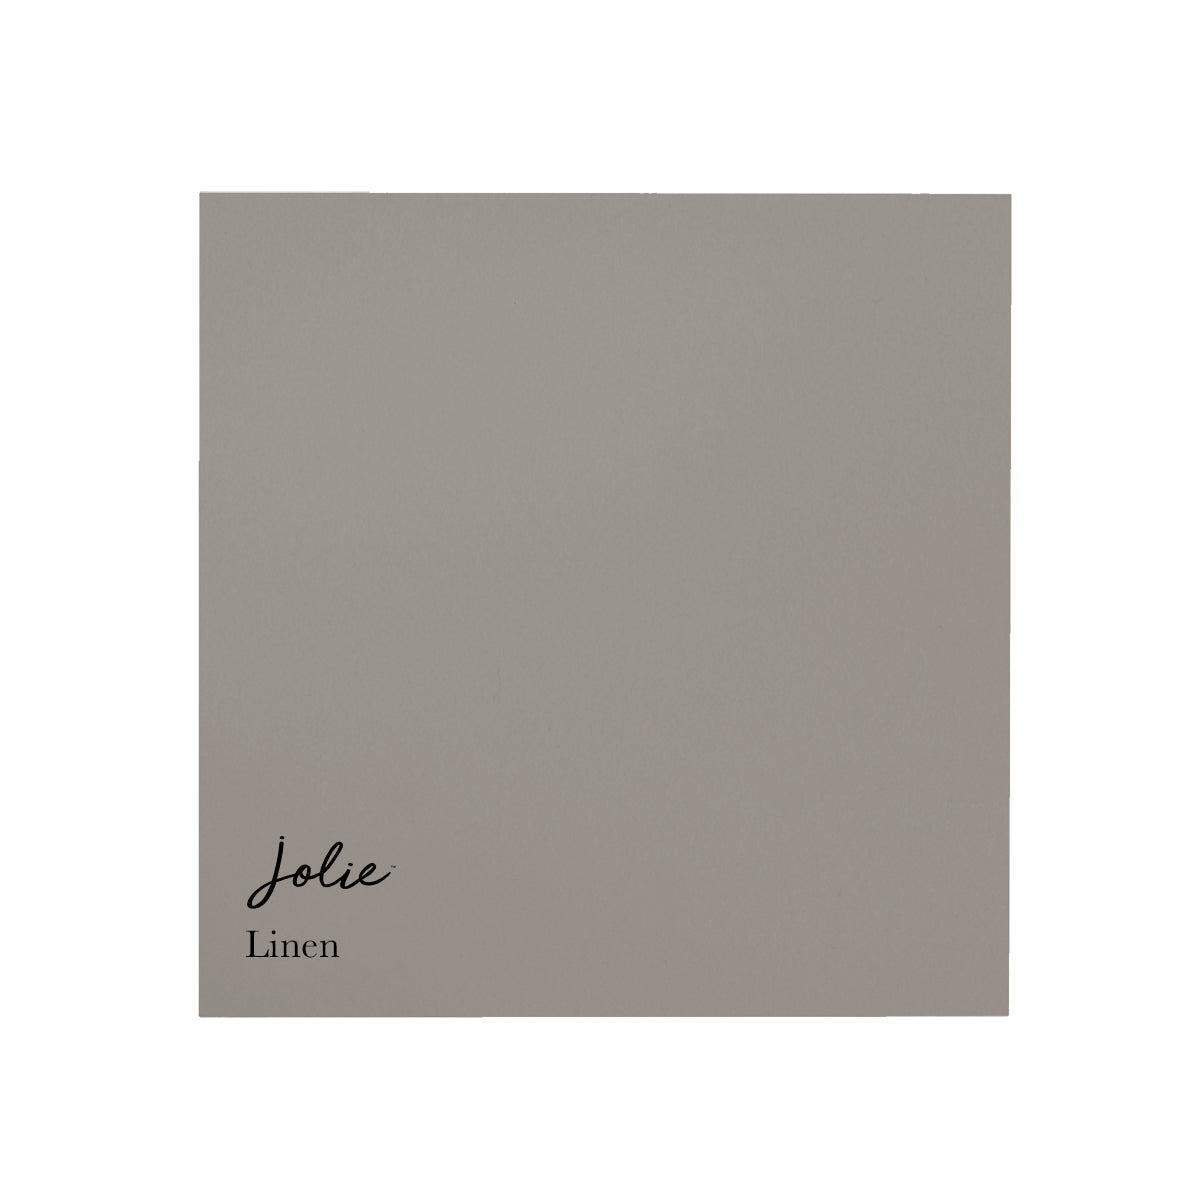 Jolie Paint; Linen, Sample size, 4oz, Size: 4 fl oz, White